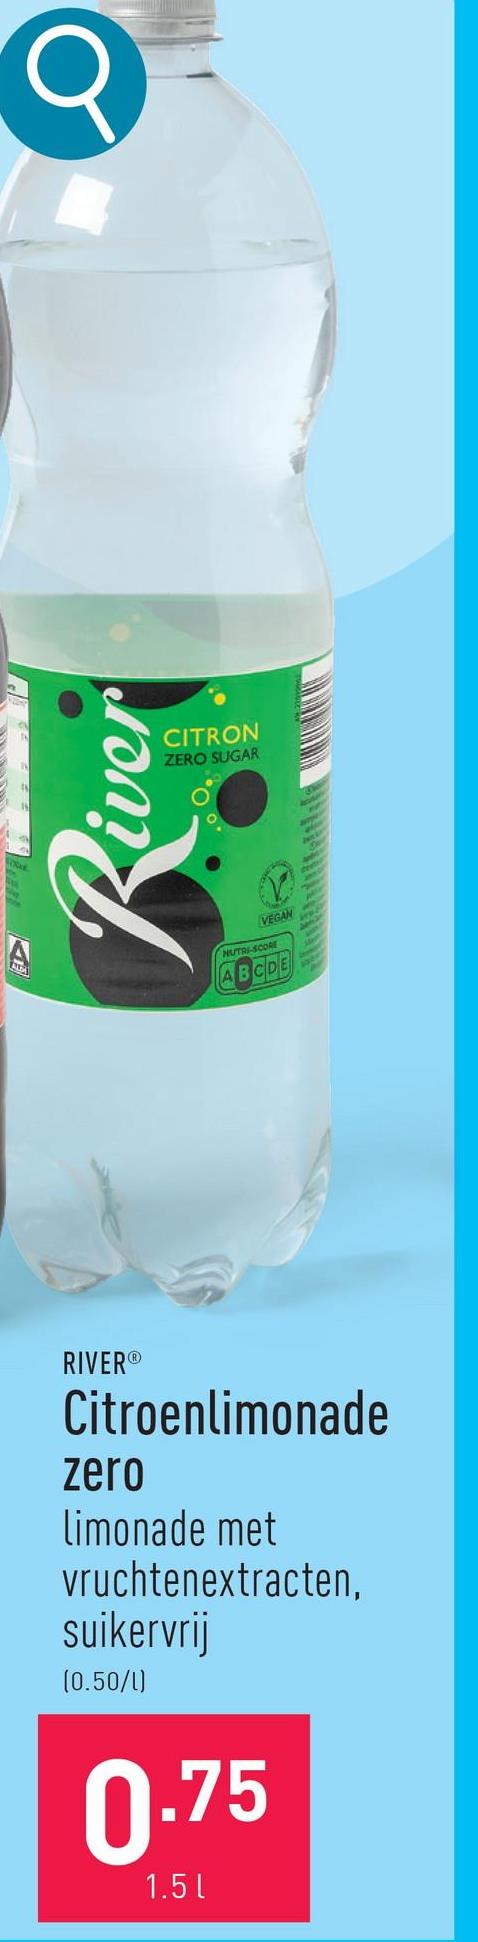 RIVER®
Citroenlimonade
zero
limonade met
vruchtenextracten.
suikervrij
(0.50/1)
0.75
1.5 l
R
VEGAN
NUTRI-SCORE
ABCDE
iver
CITRON
ZERO SUGAR